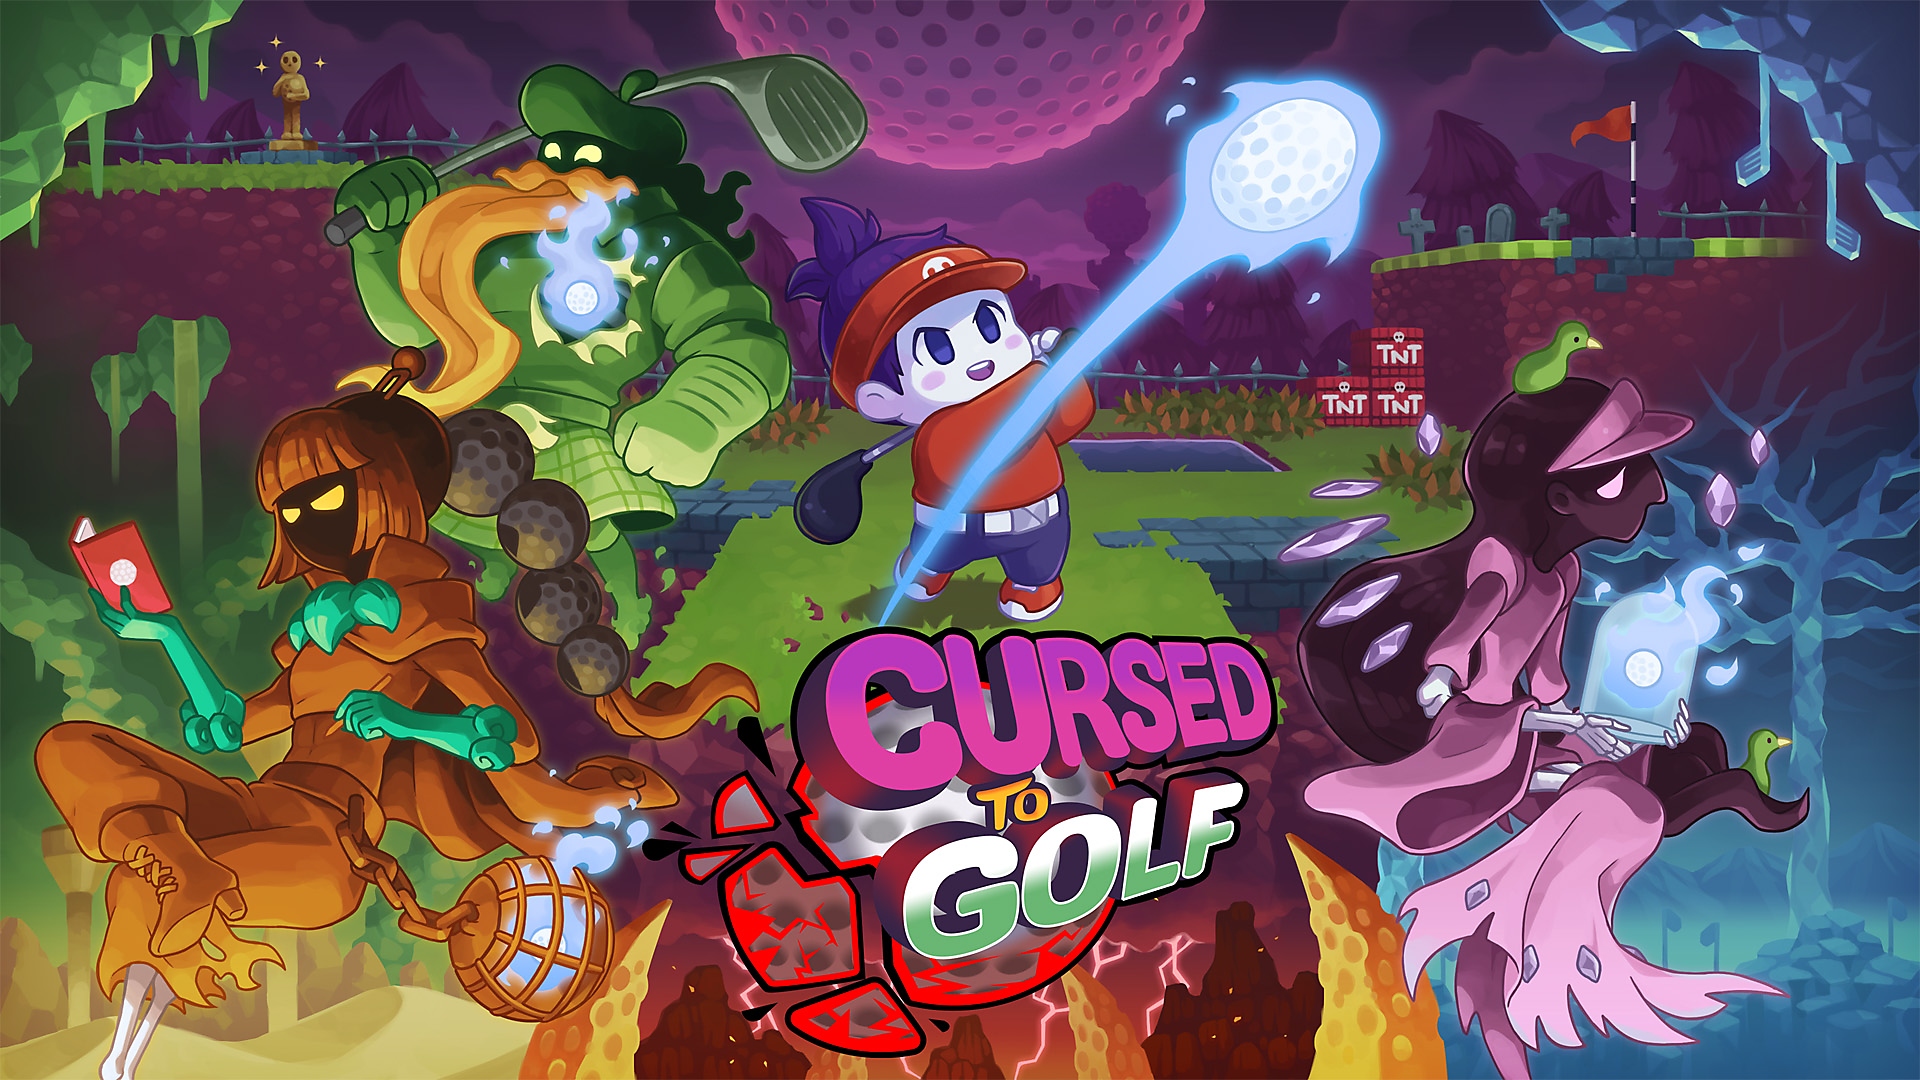 Cursed to Golf - Are You ready to Golf!? - Anuncio de fecha | Juegos de PS5 y PS4